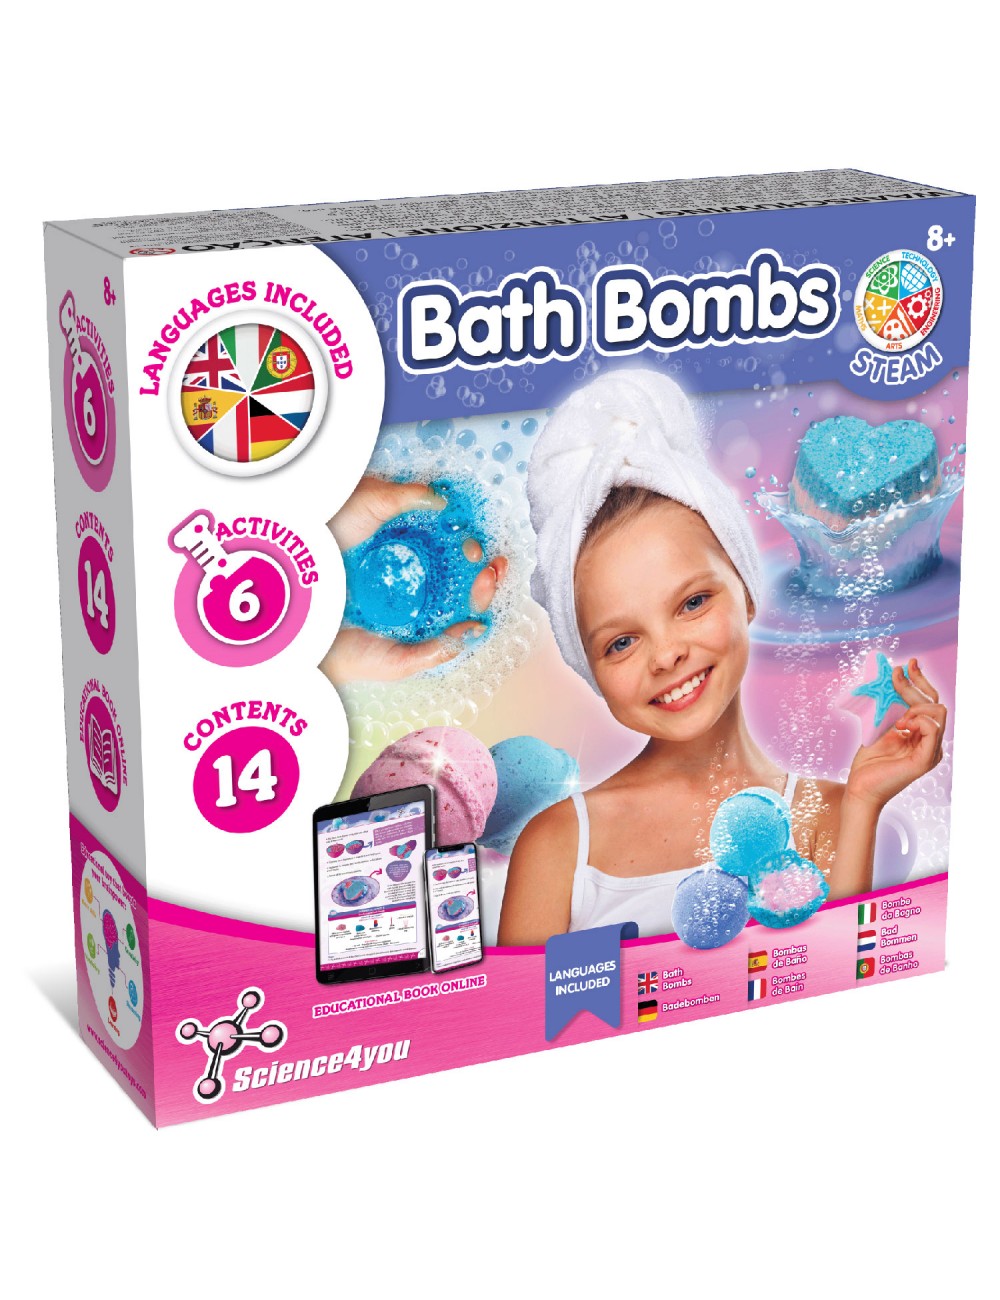 Bombas de baño, Juguetes cosméticos para niños 8+